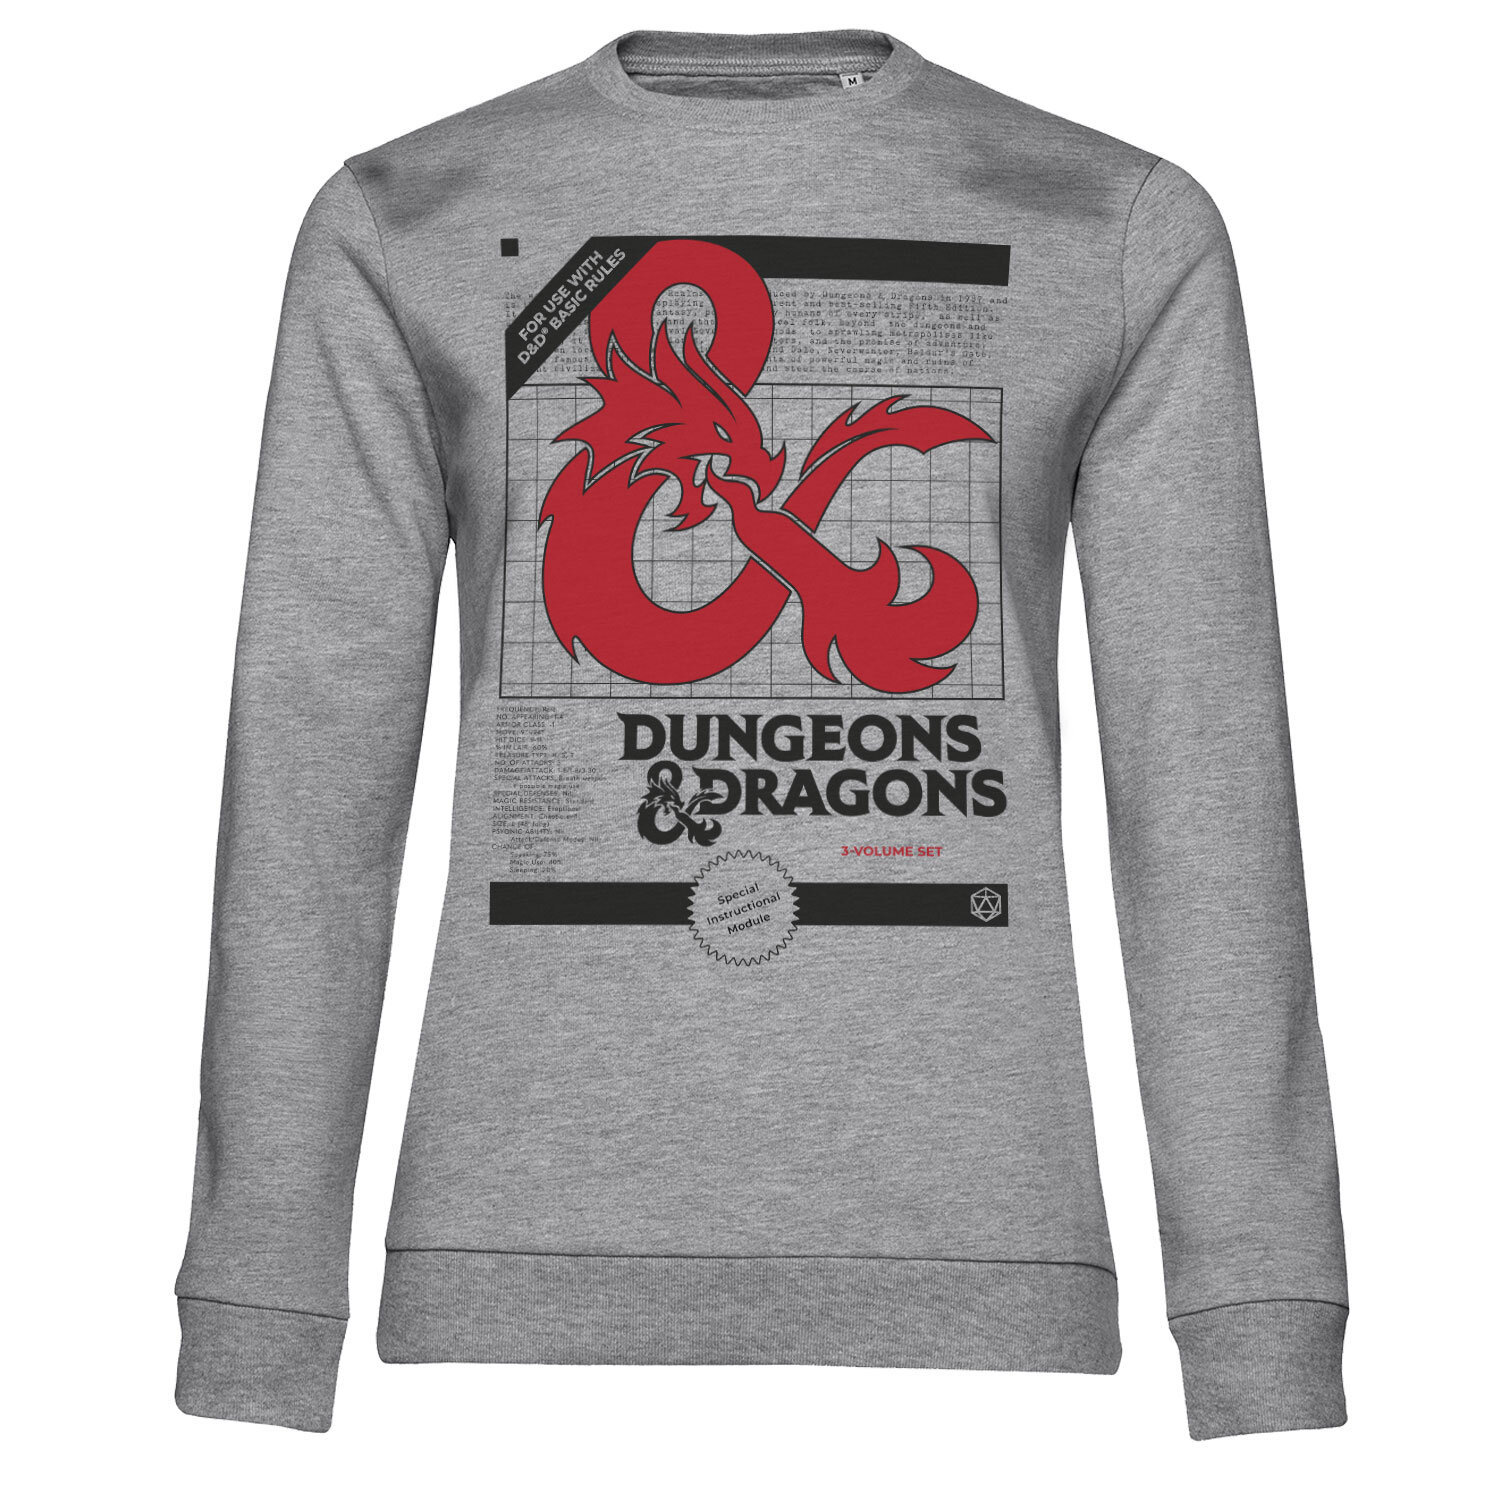 Dungeons & Dragons - 3 Volume Set Girly Sweatshirt